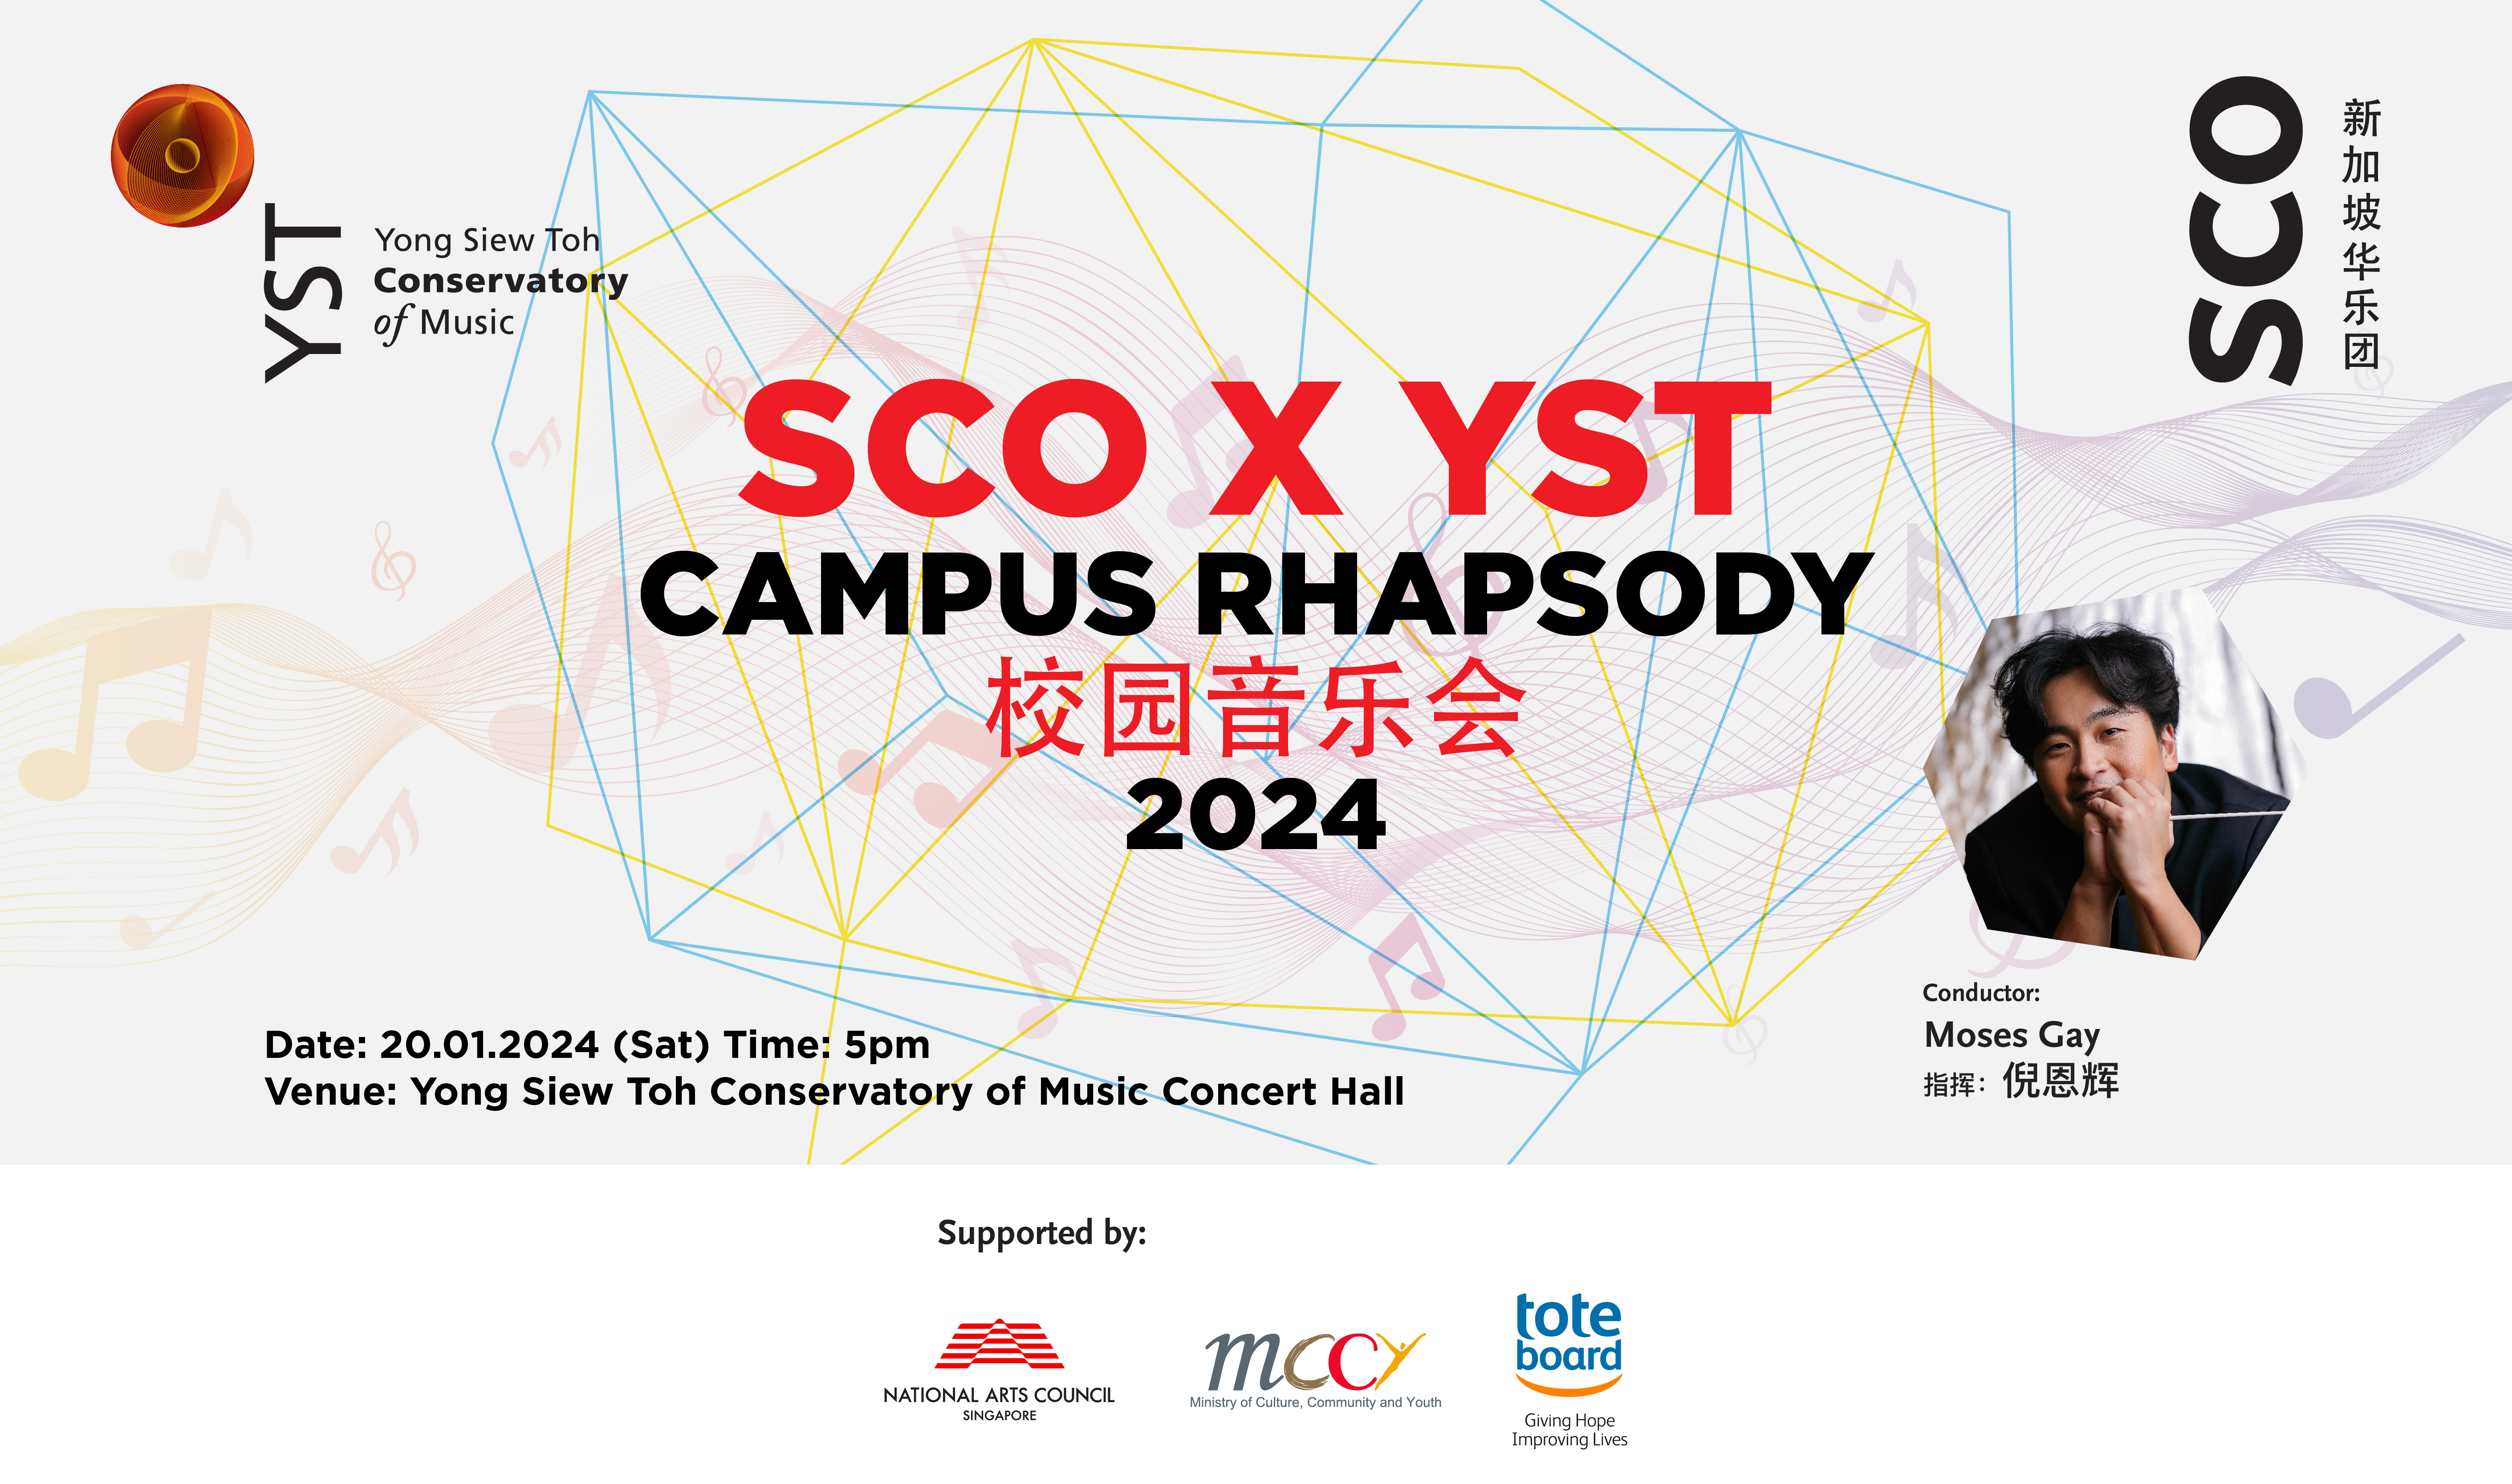 SCO X YST Campus Rhapsody